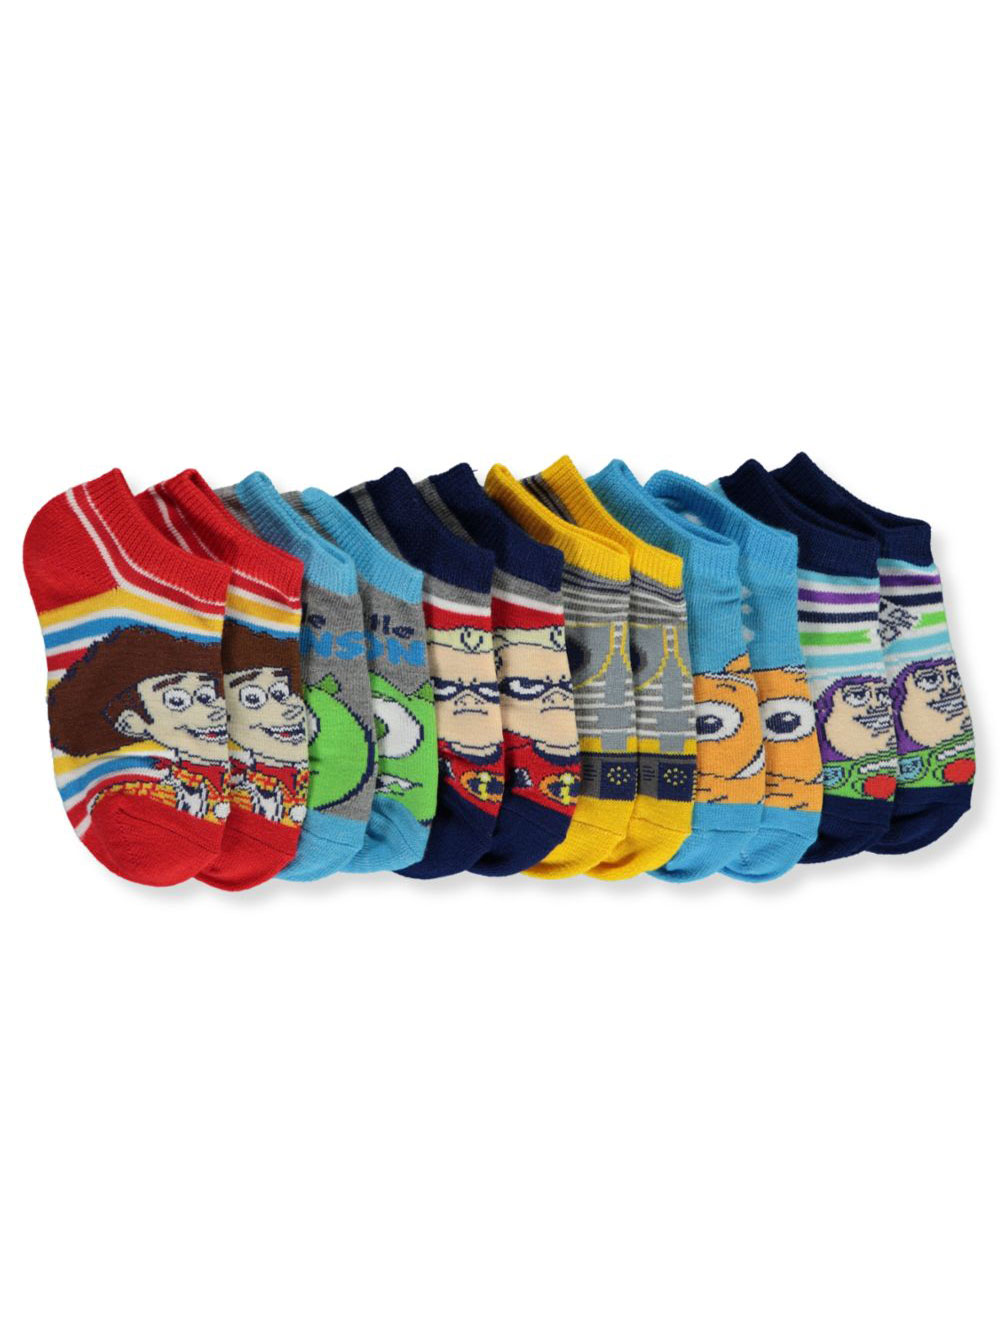 Boys' 6-Pack Socks